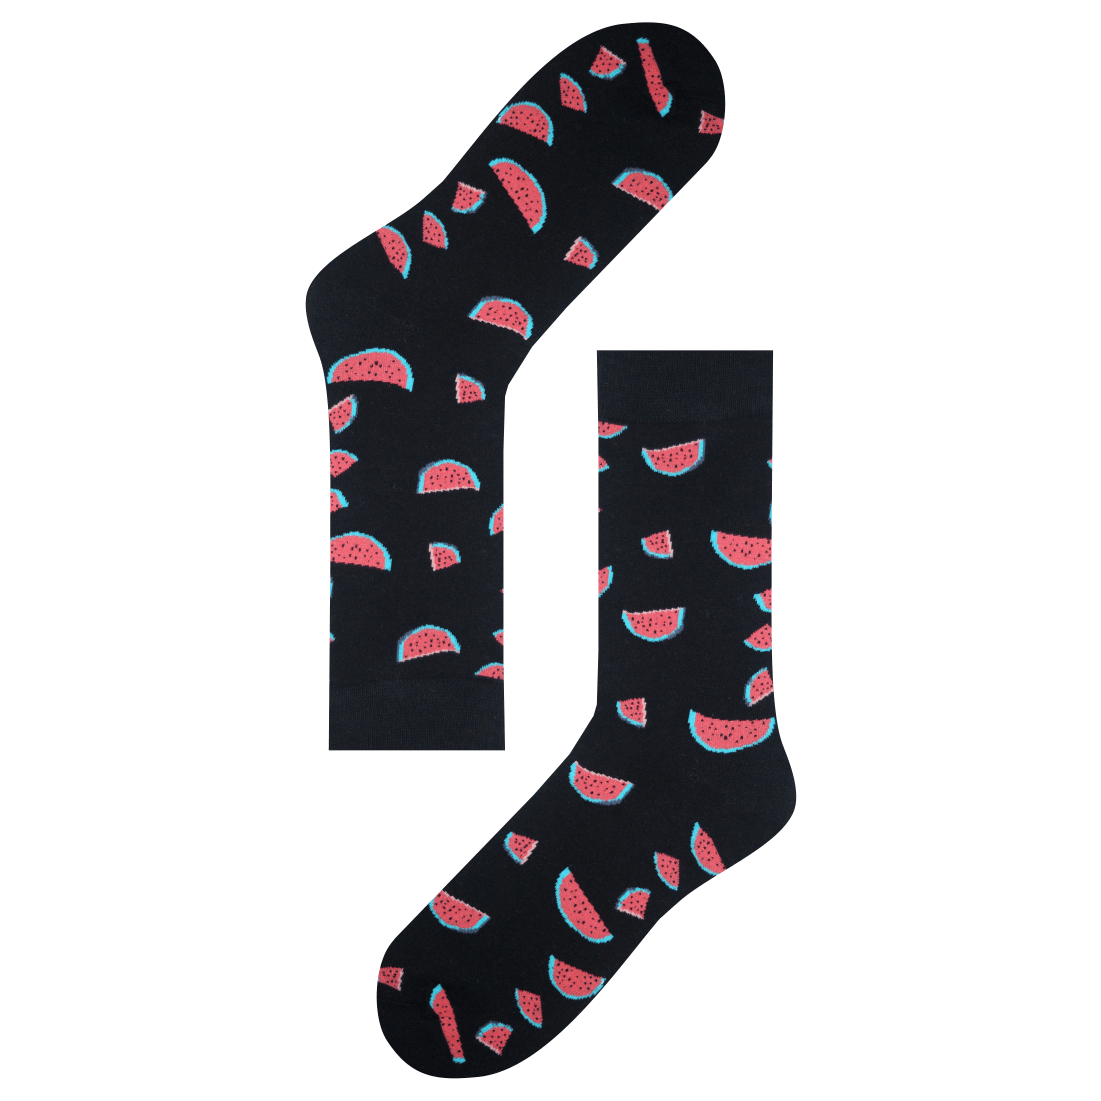 Medias Locas calcetines divertidos de diseño de sandias Freaky Socks